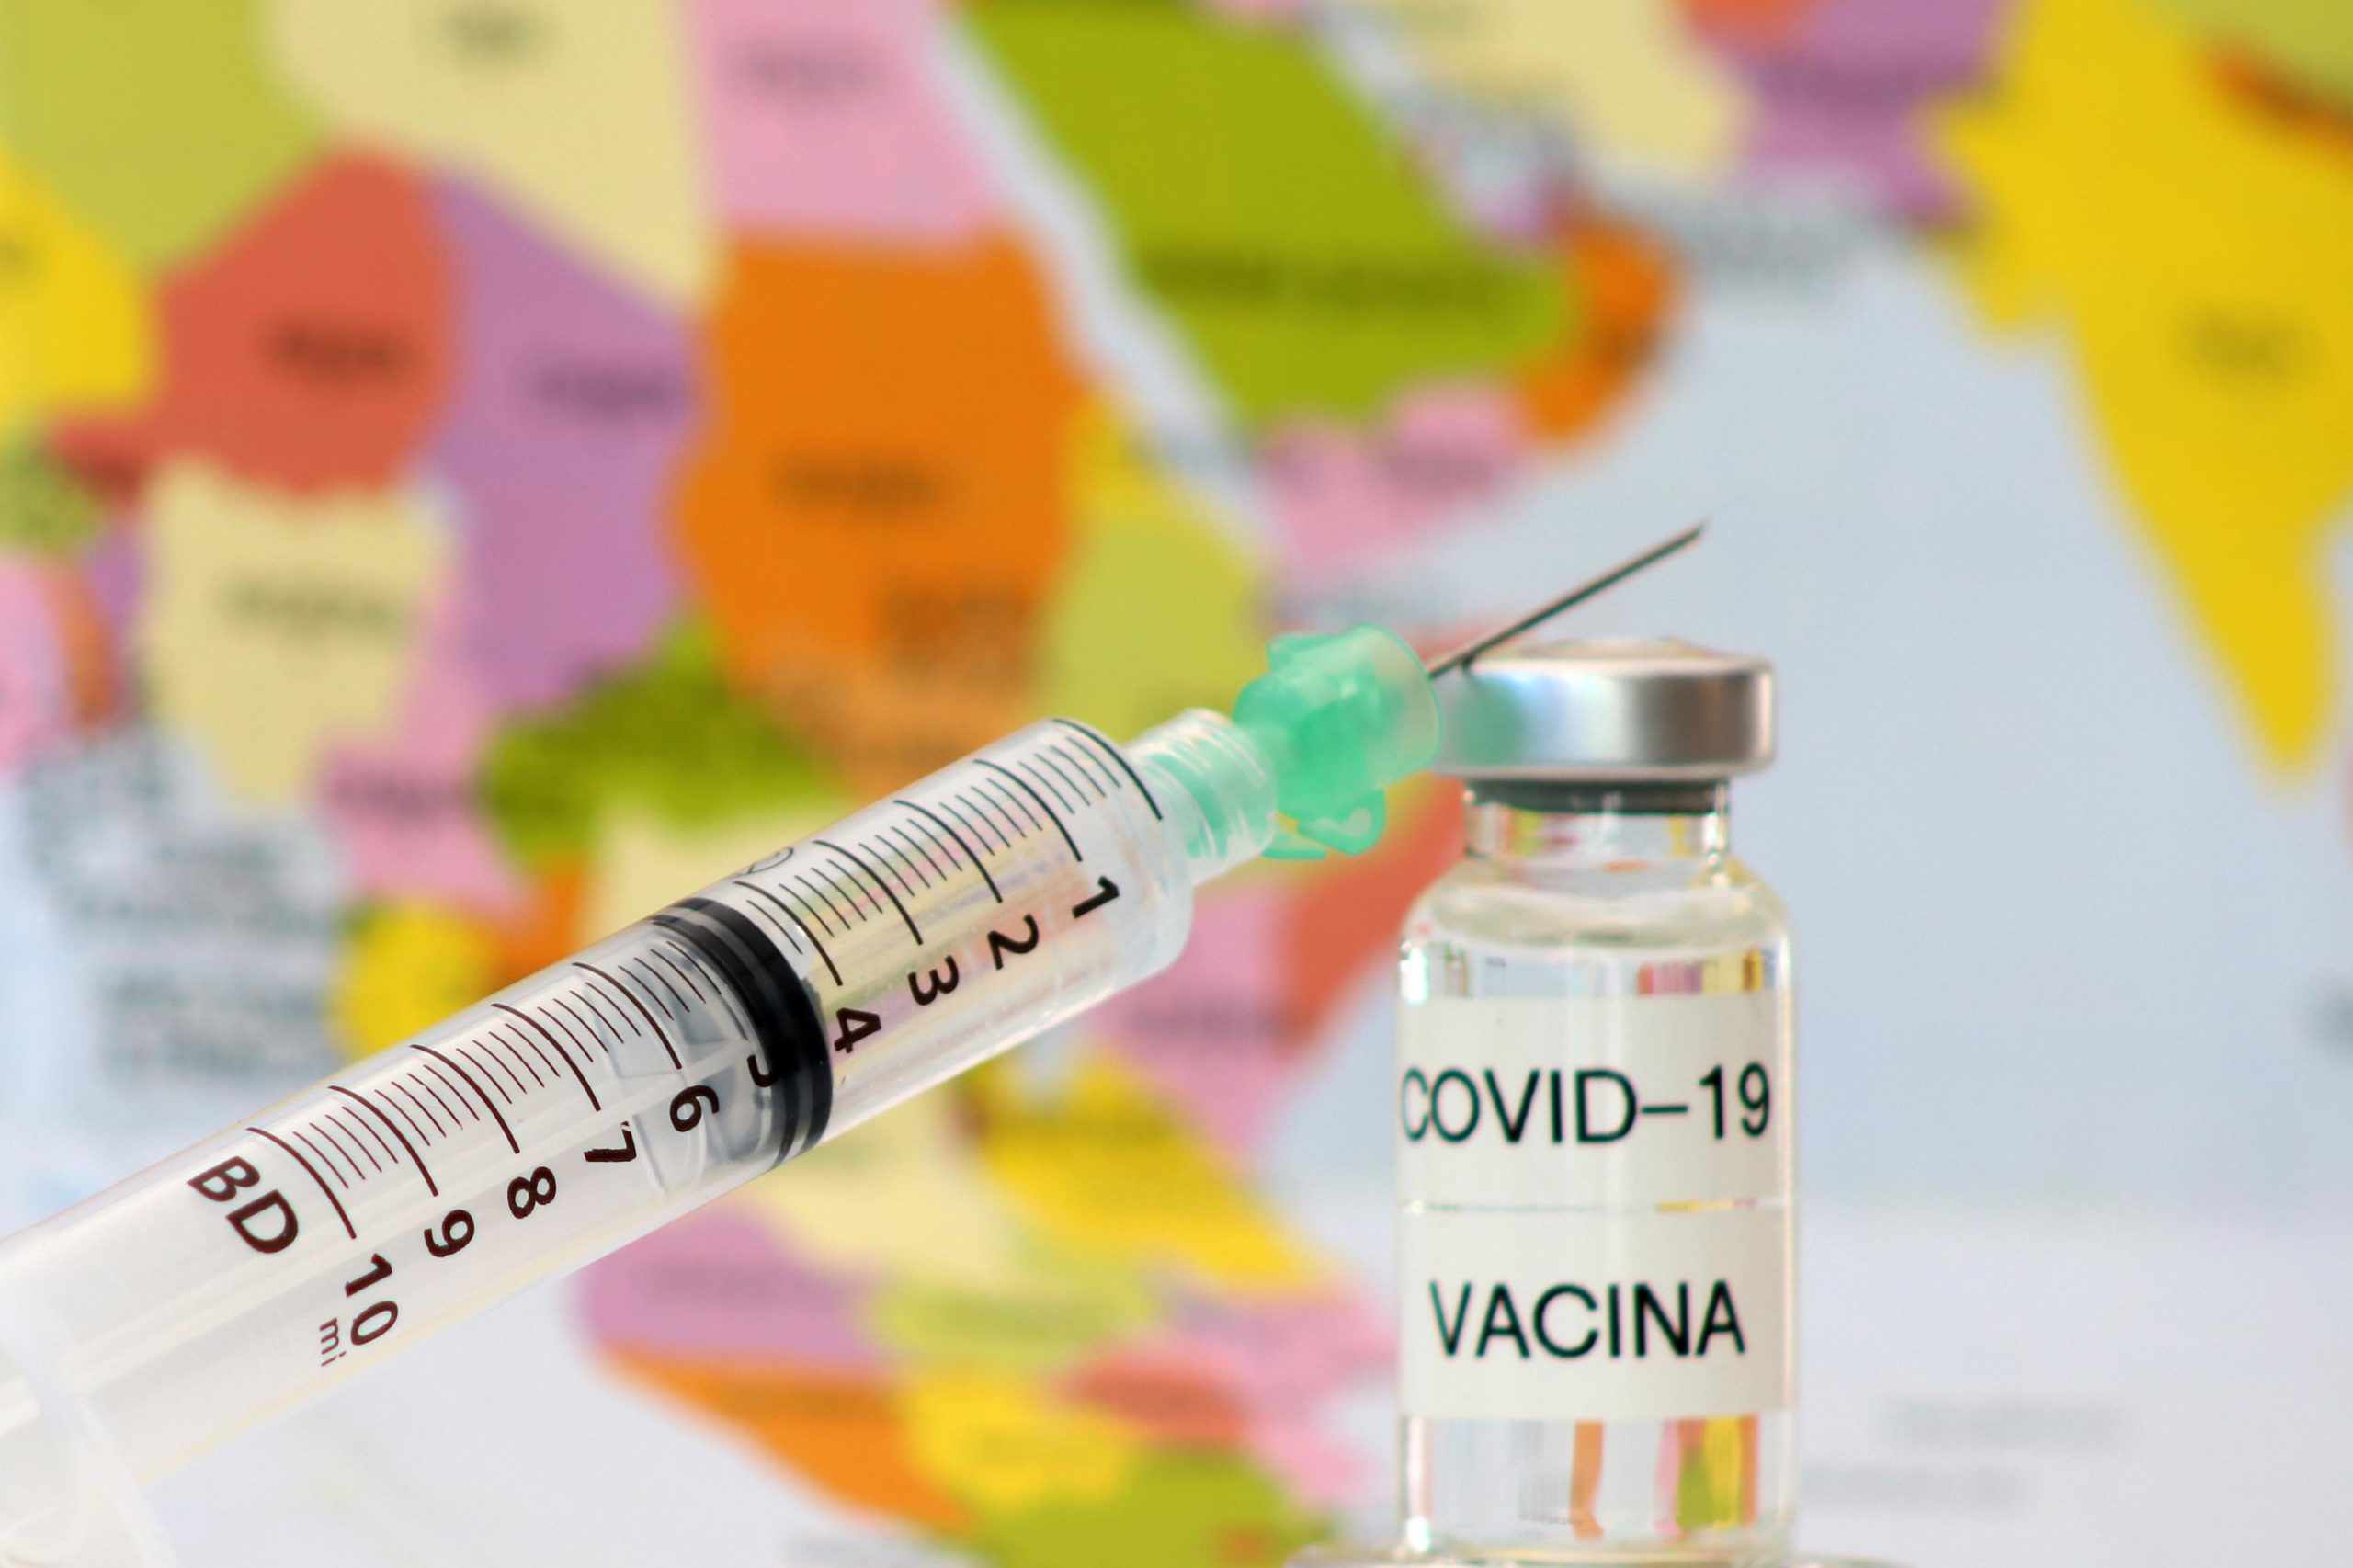 Fábricas veterinárias são autorizadas a produzir vacinas contra a Covid-19